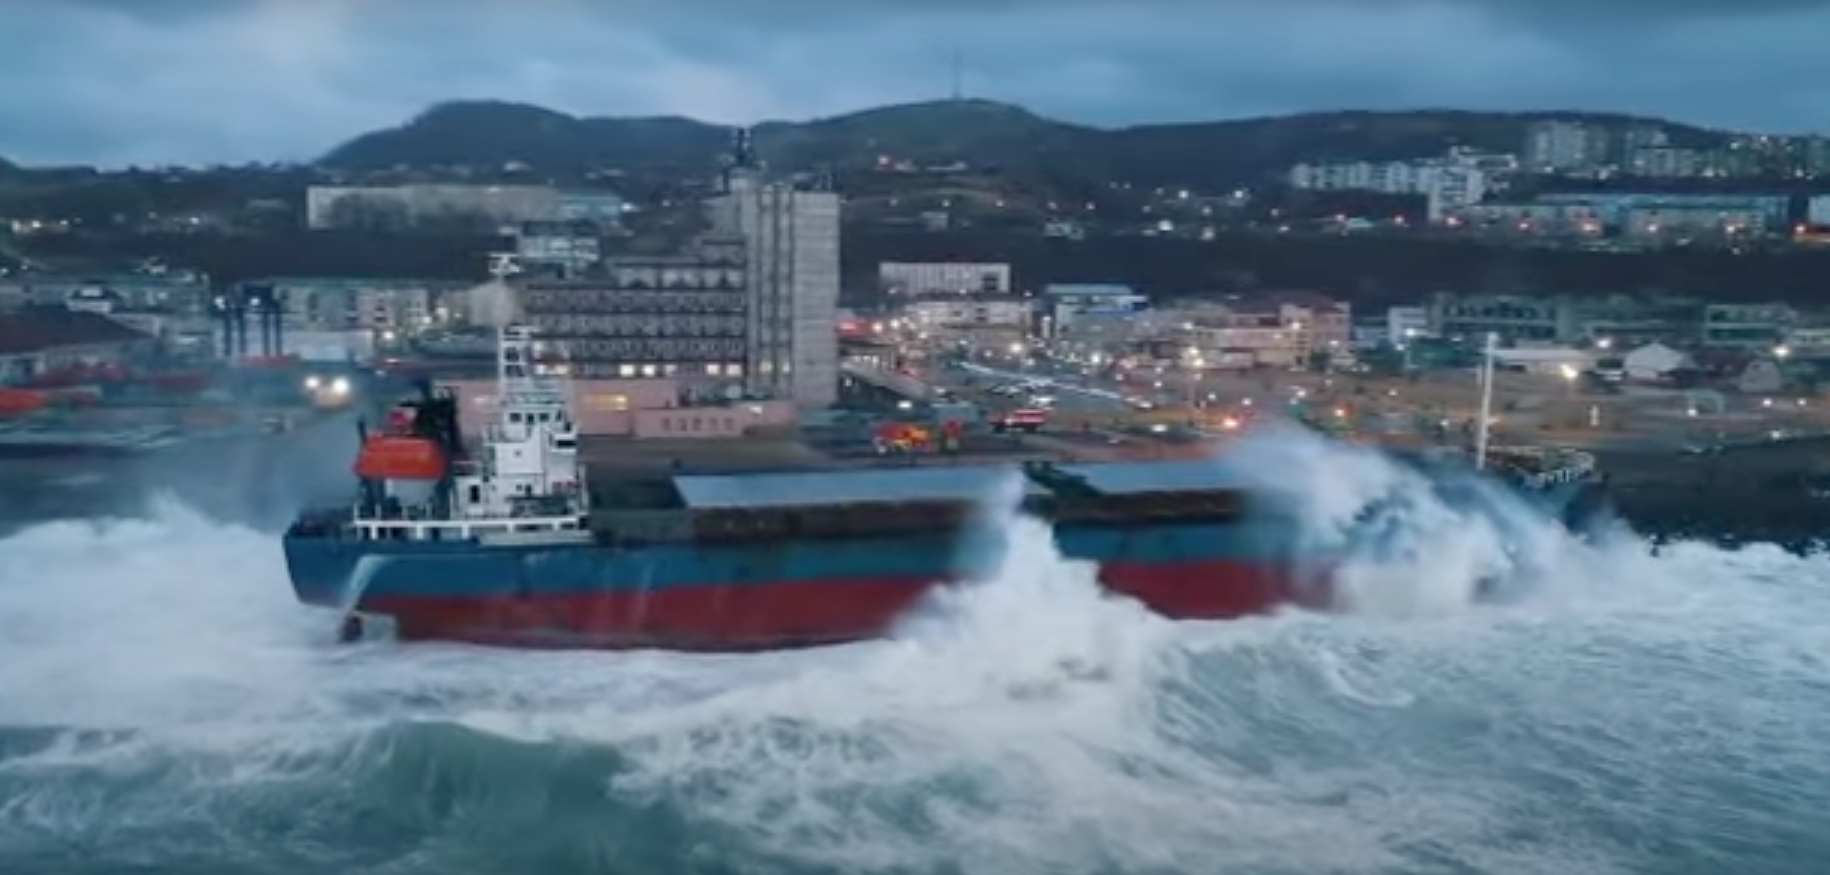 De golven klotsen nog steeds tegen het schip op. (Beeld uit video)